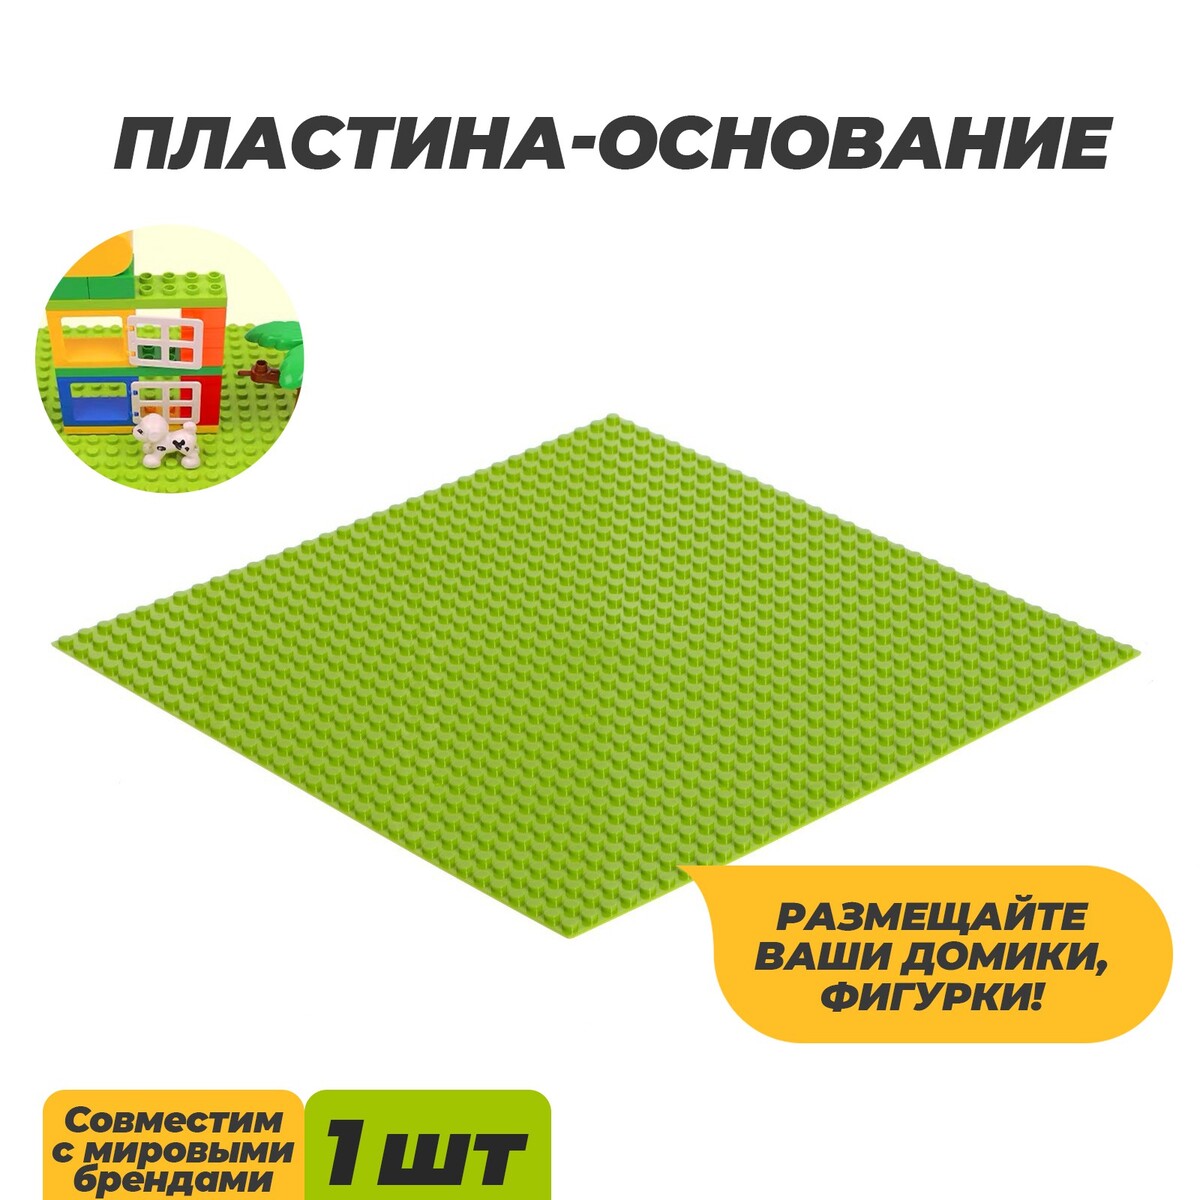 Пластина-основание для конструктора, 25,5 × 25,5 см, цвет салатовый пластина основание для конструктора 25 5 × 12 5 см серый